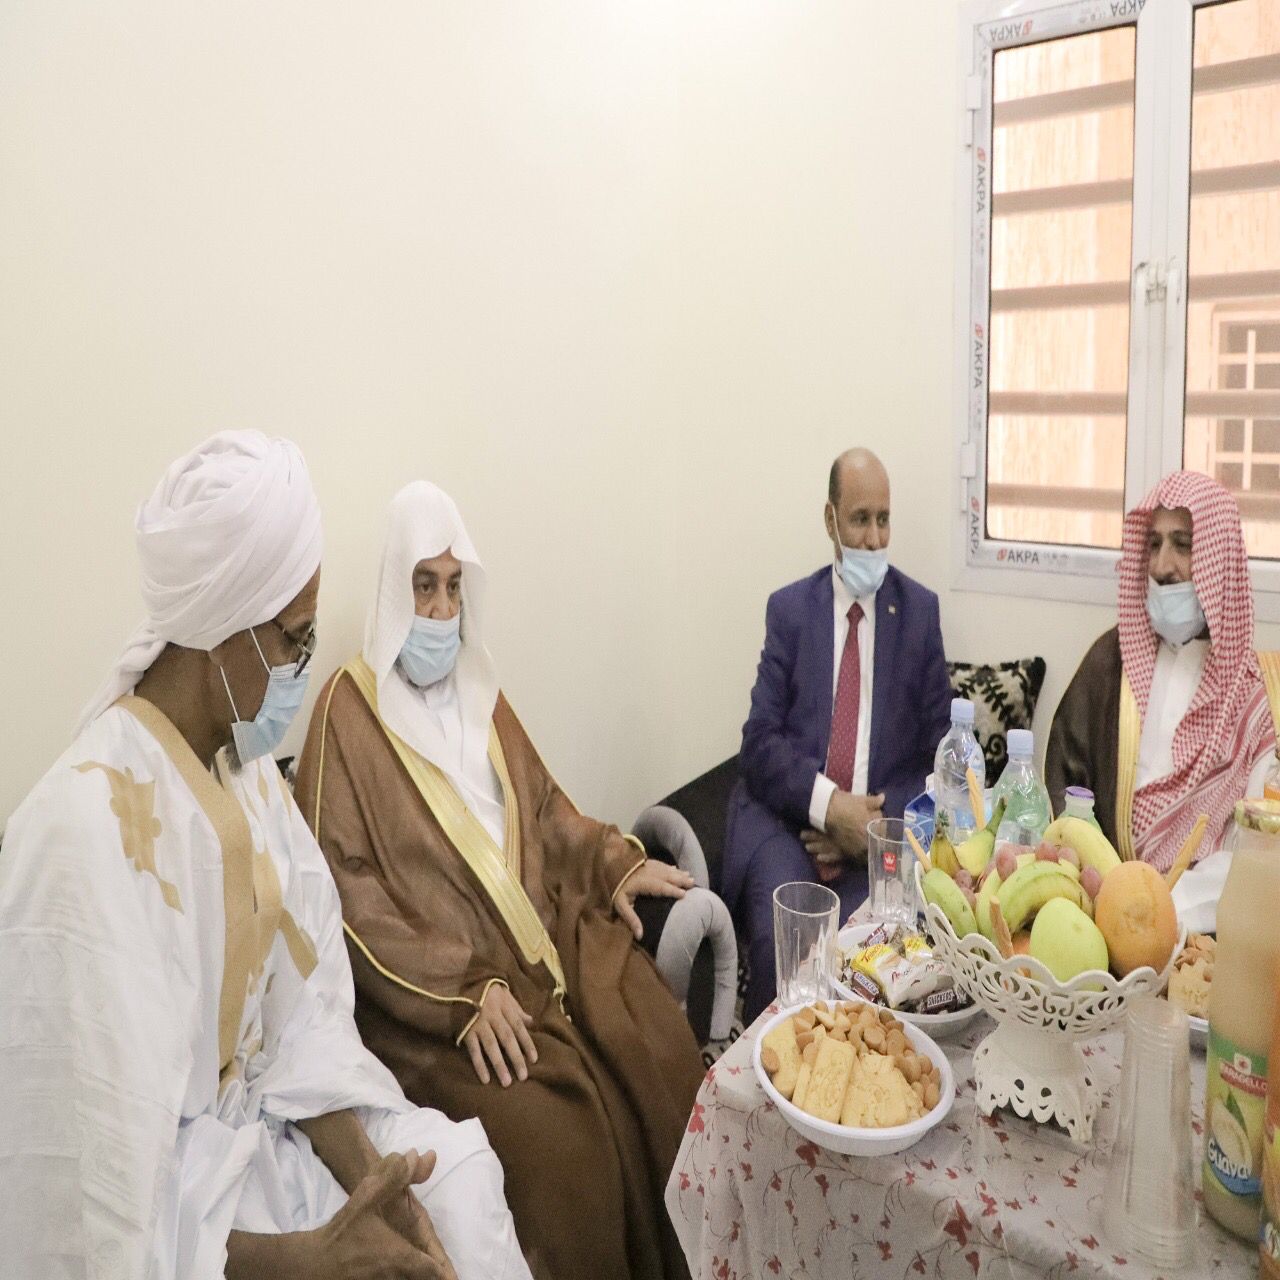 مفتي موريتانيا: المملكة ذات رسالة إسلامية واضحة تتسم بالوسطية والاعتدال والتسامح